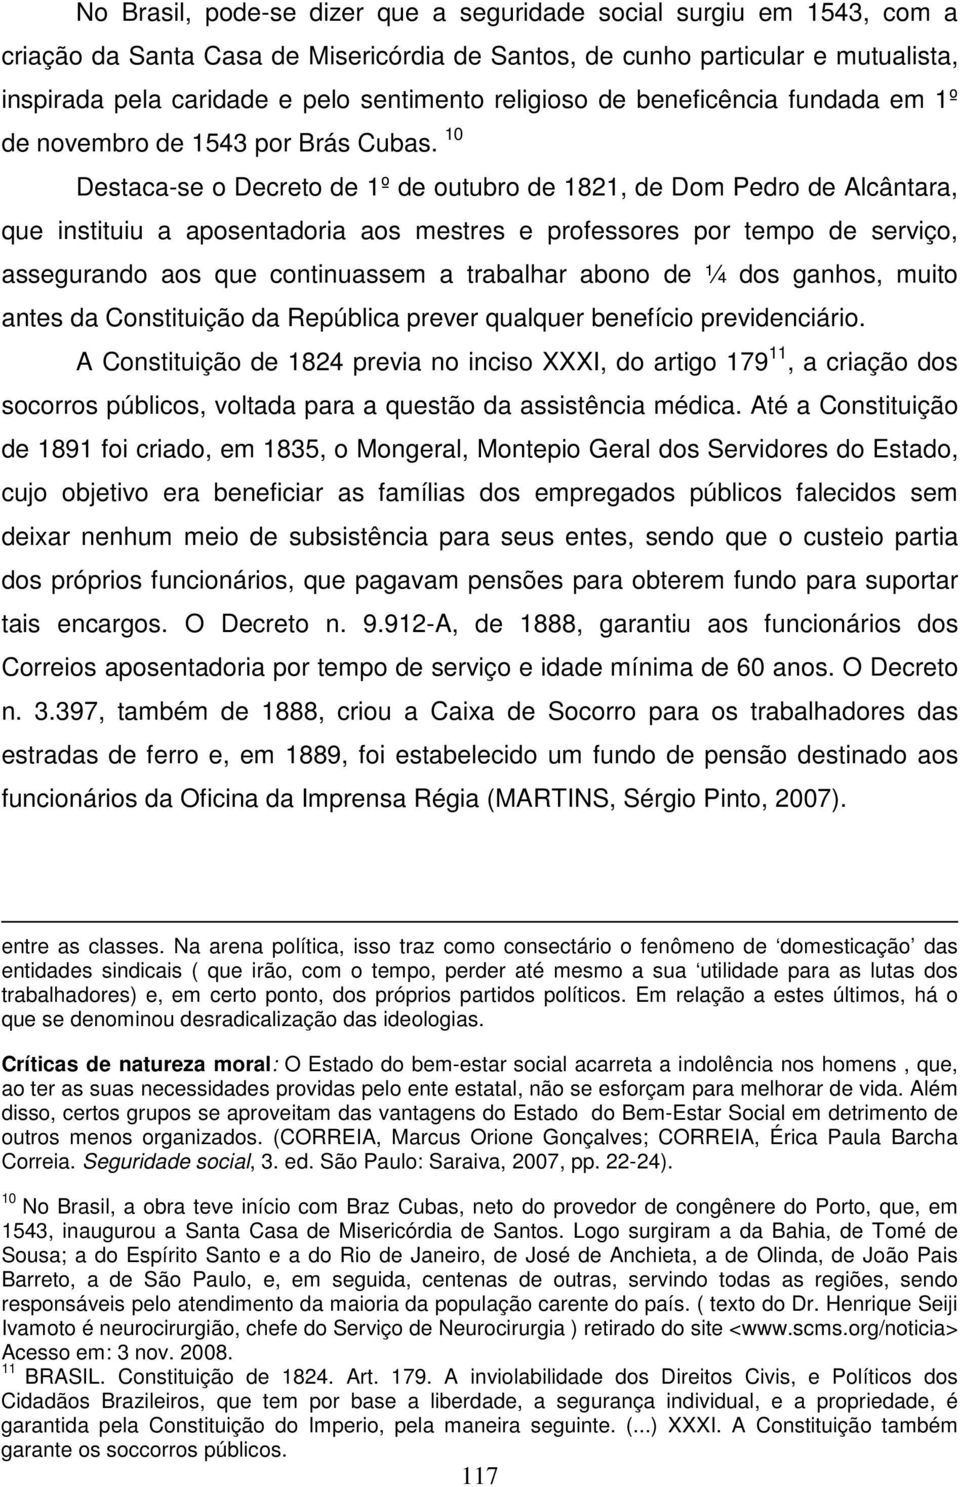 10 Destaca-se o Decreto de 1º de outubro de 1821, de Dom Pedro de Alcântara, que instituiu a aposentadoria aos mestres e professores por tempo de serviço, assegurando aos que continuassem a trabalhar